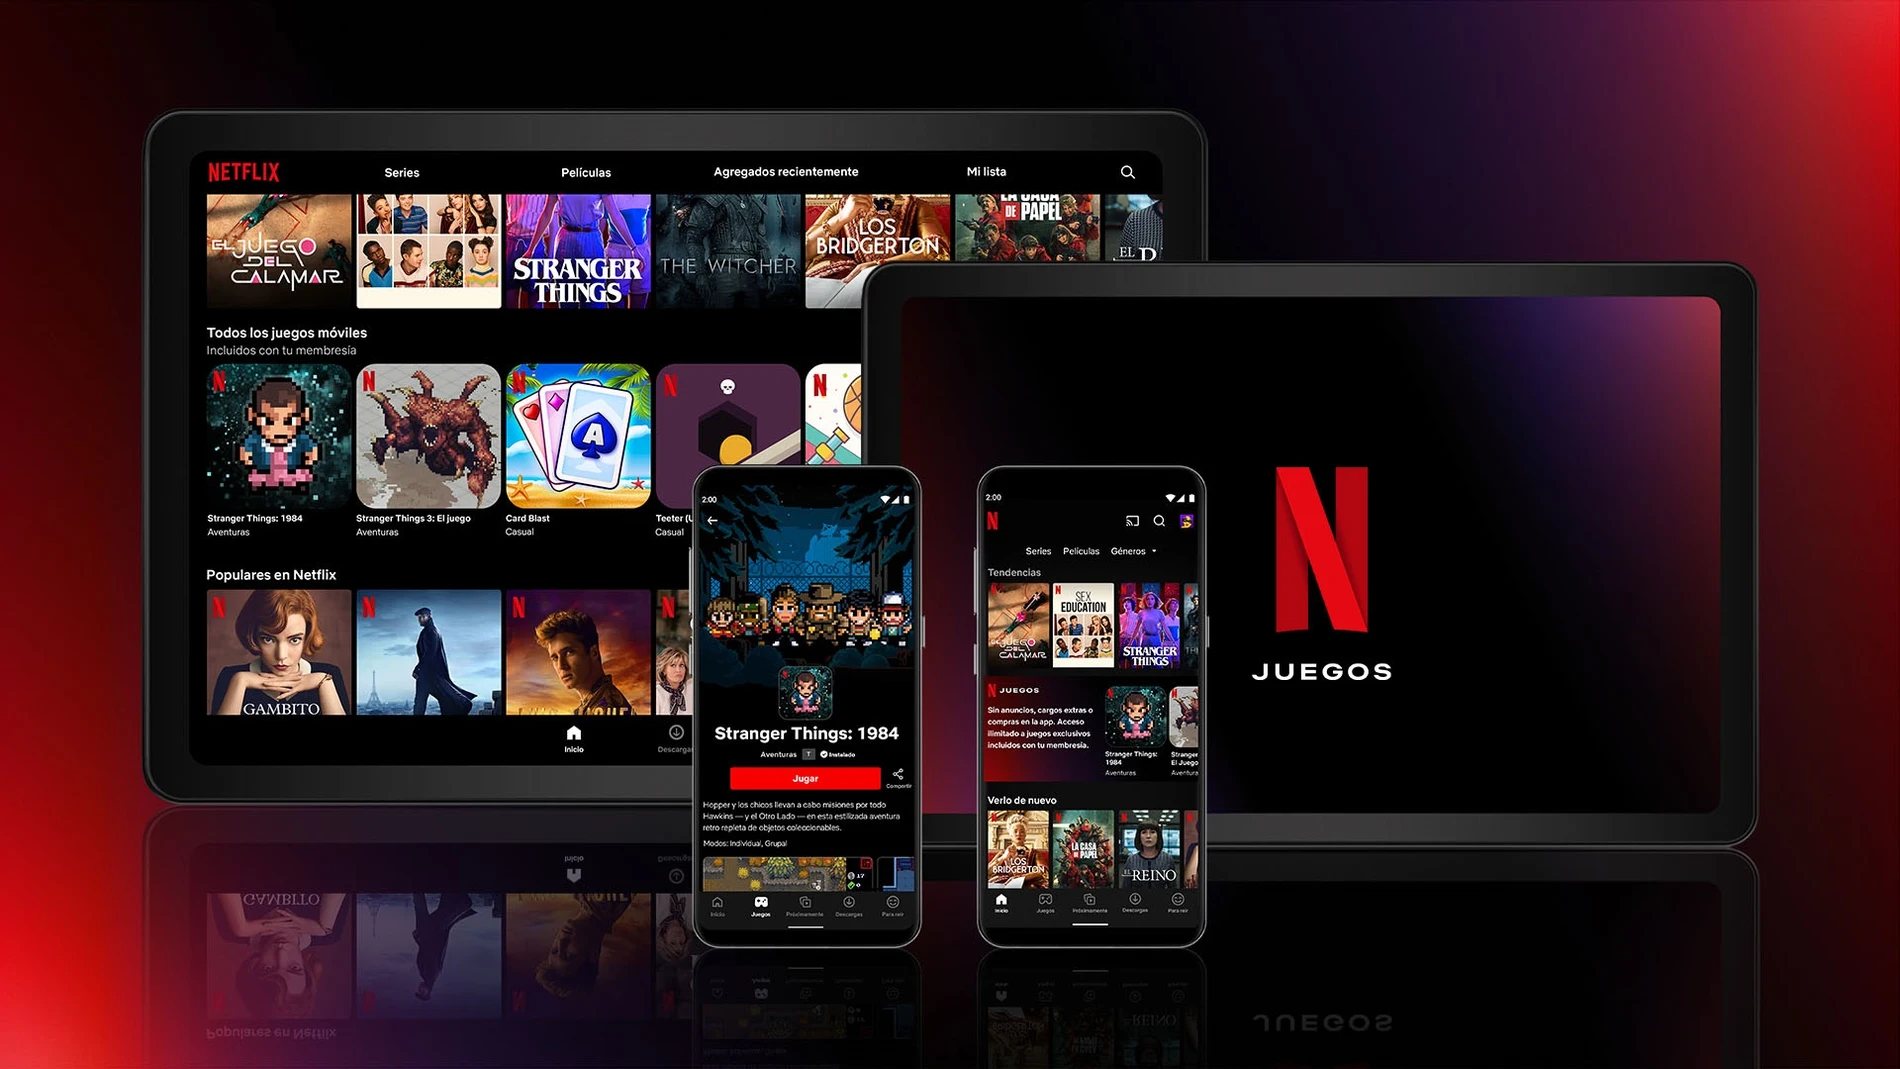 Imagen promocional de Netflix Juegos en varias plataformas disponibles